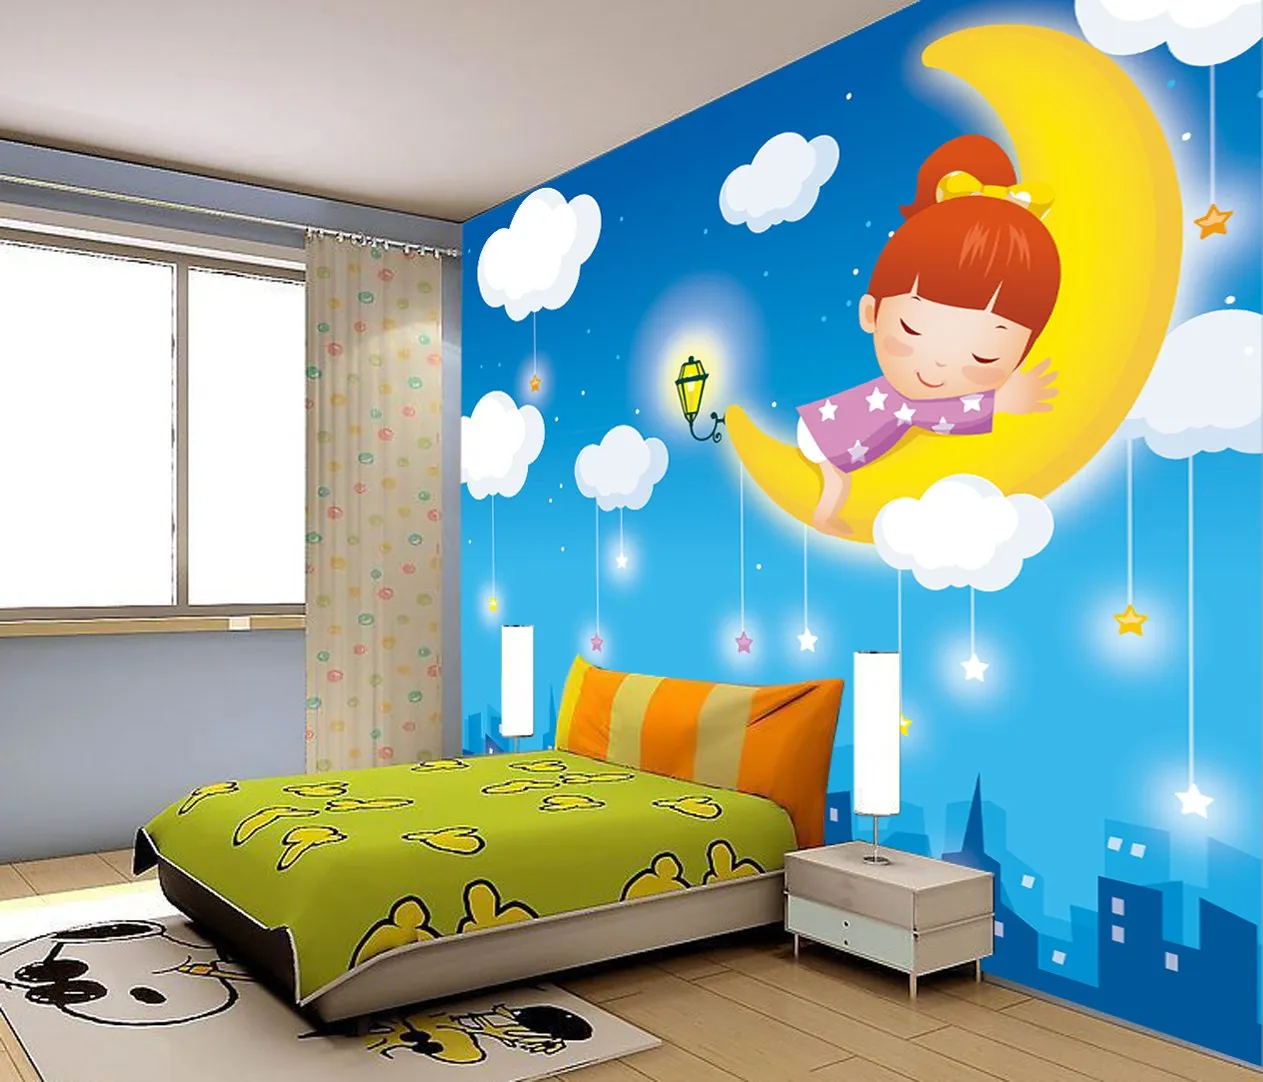 Кровати в детском саду: правила расстановки, нормы СанПиН